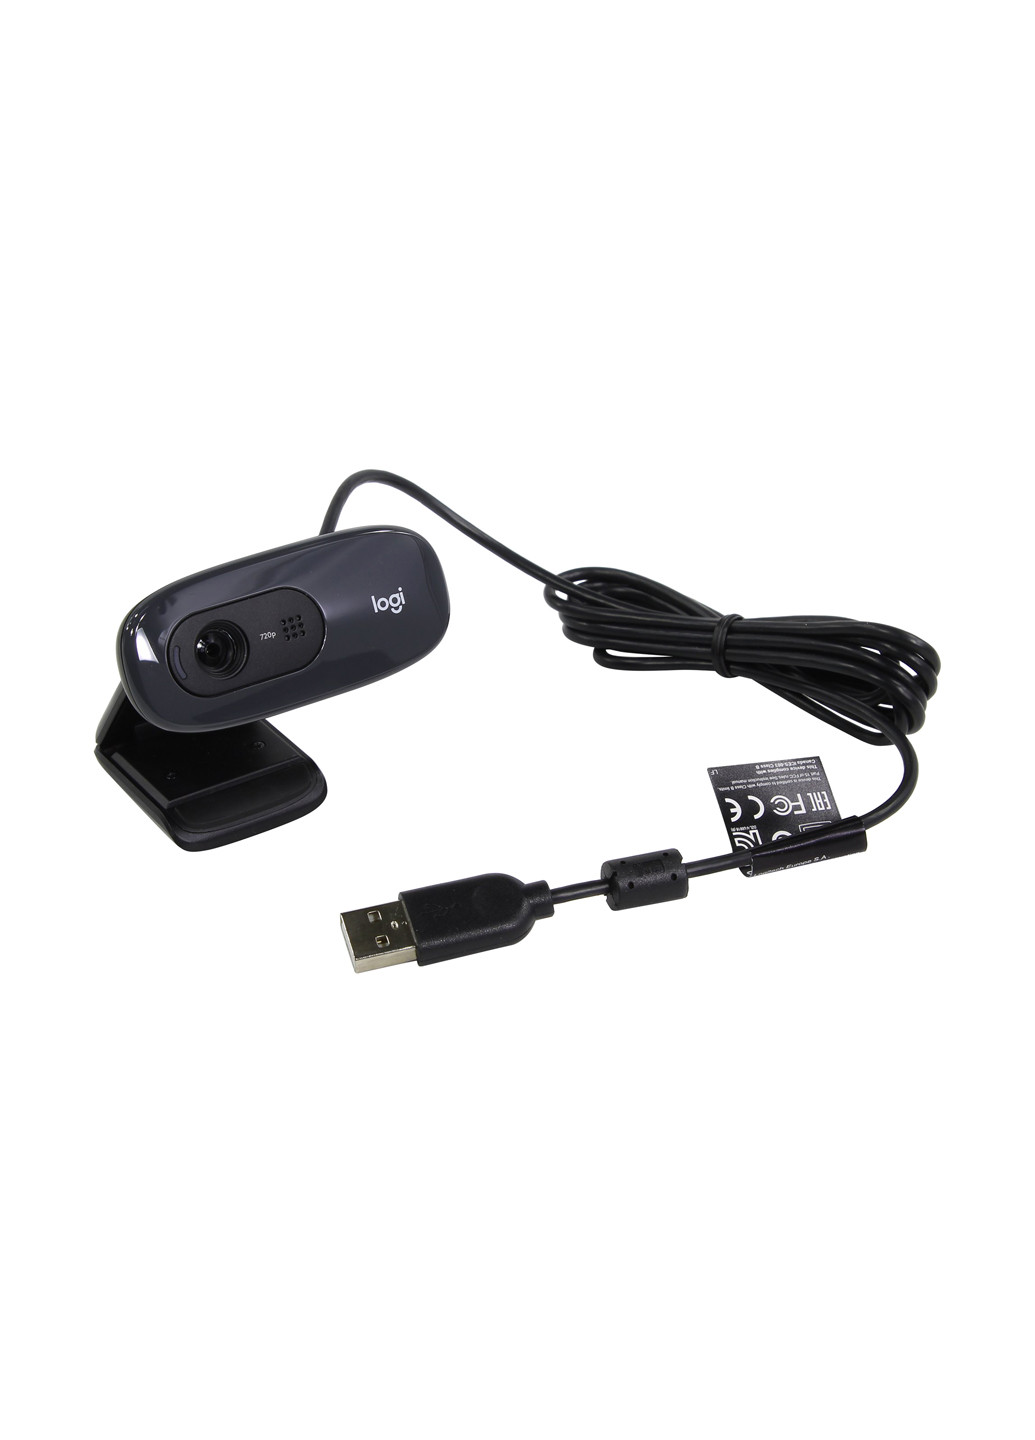 Веб-камера HD Webcam C270 - EMEA Logitech hd webcam c270 - emea (l960-001063) (135463232)